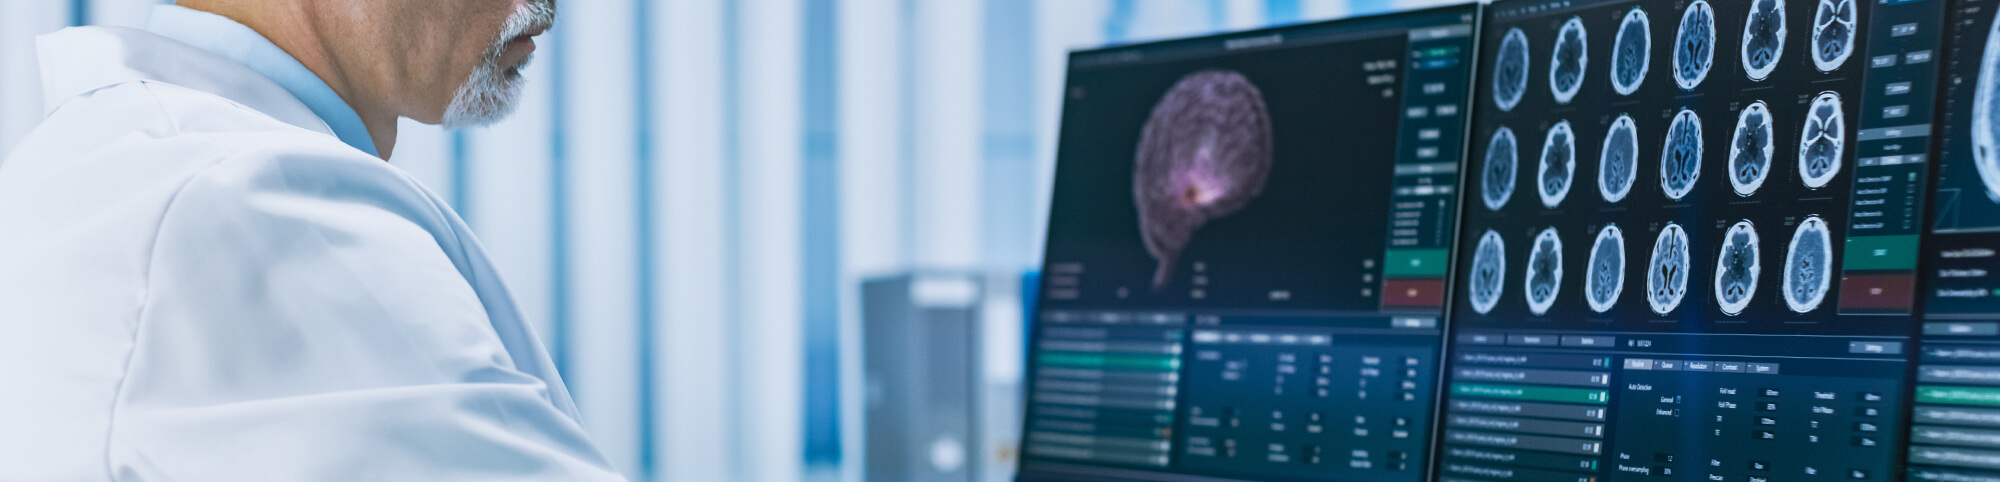 Arzt analysiert MRT-Bilder eines Gehirns